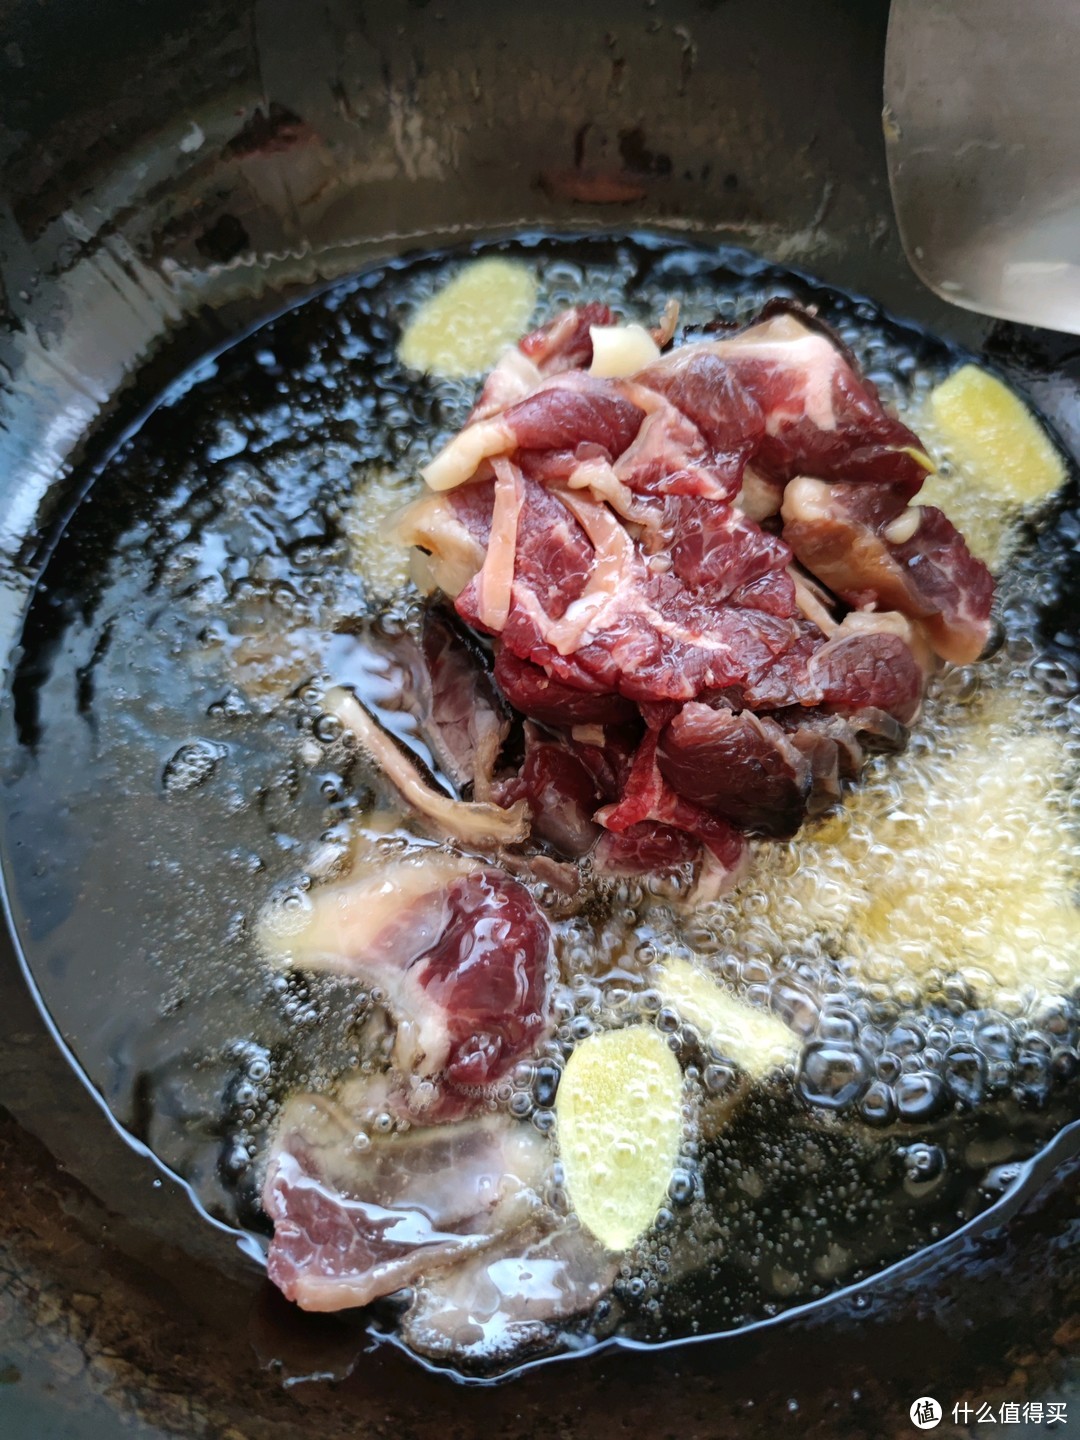 这能算个硬菜了吧，油淋牛肉干巴，麻辣鲜香，介于炒鲜牛肉和风干牛肉之间的口感！